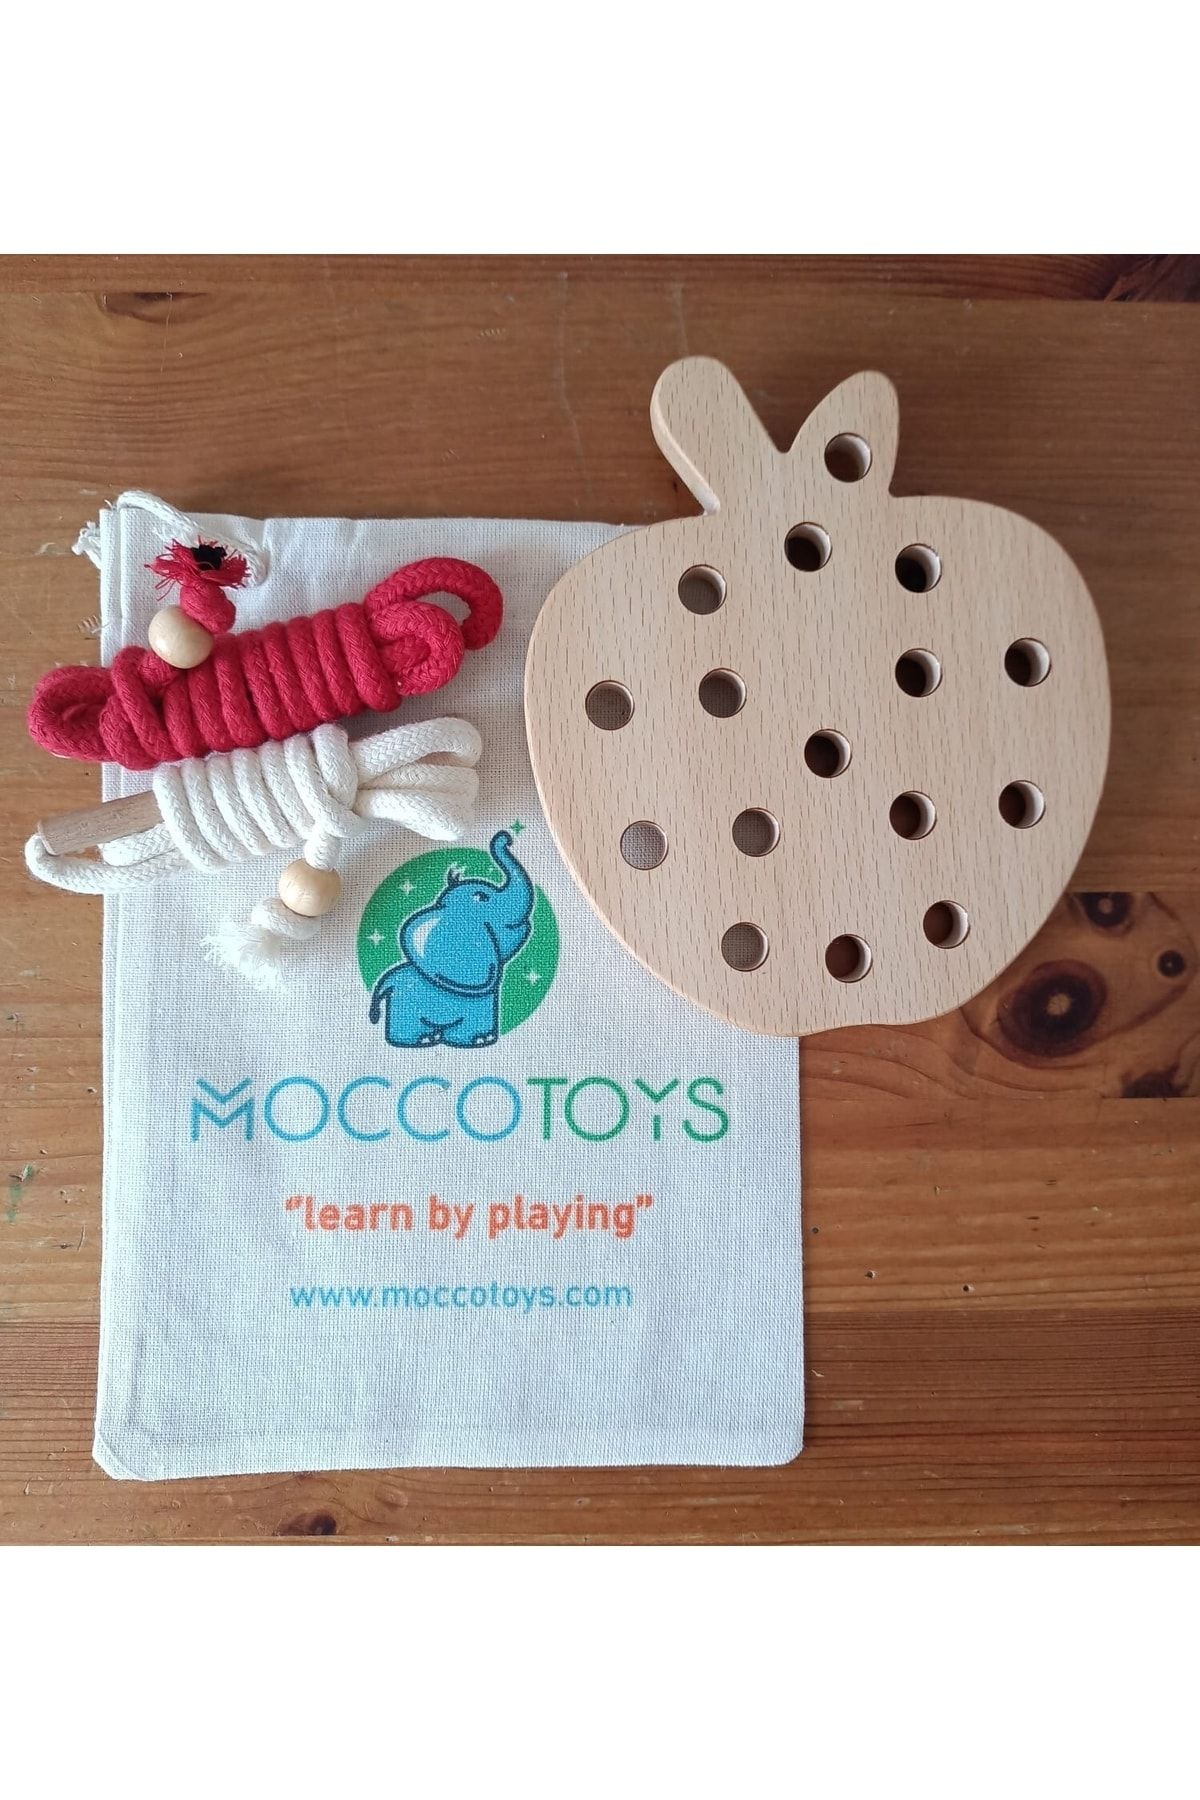 Moccotoys İp Geçirme Elma Montessori Oyunu